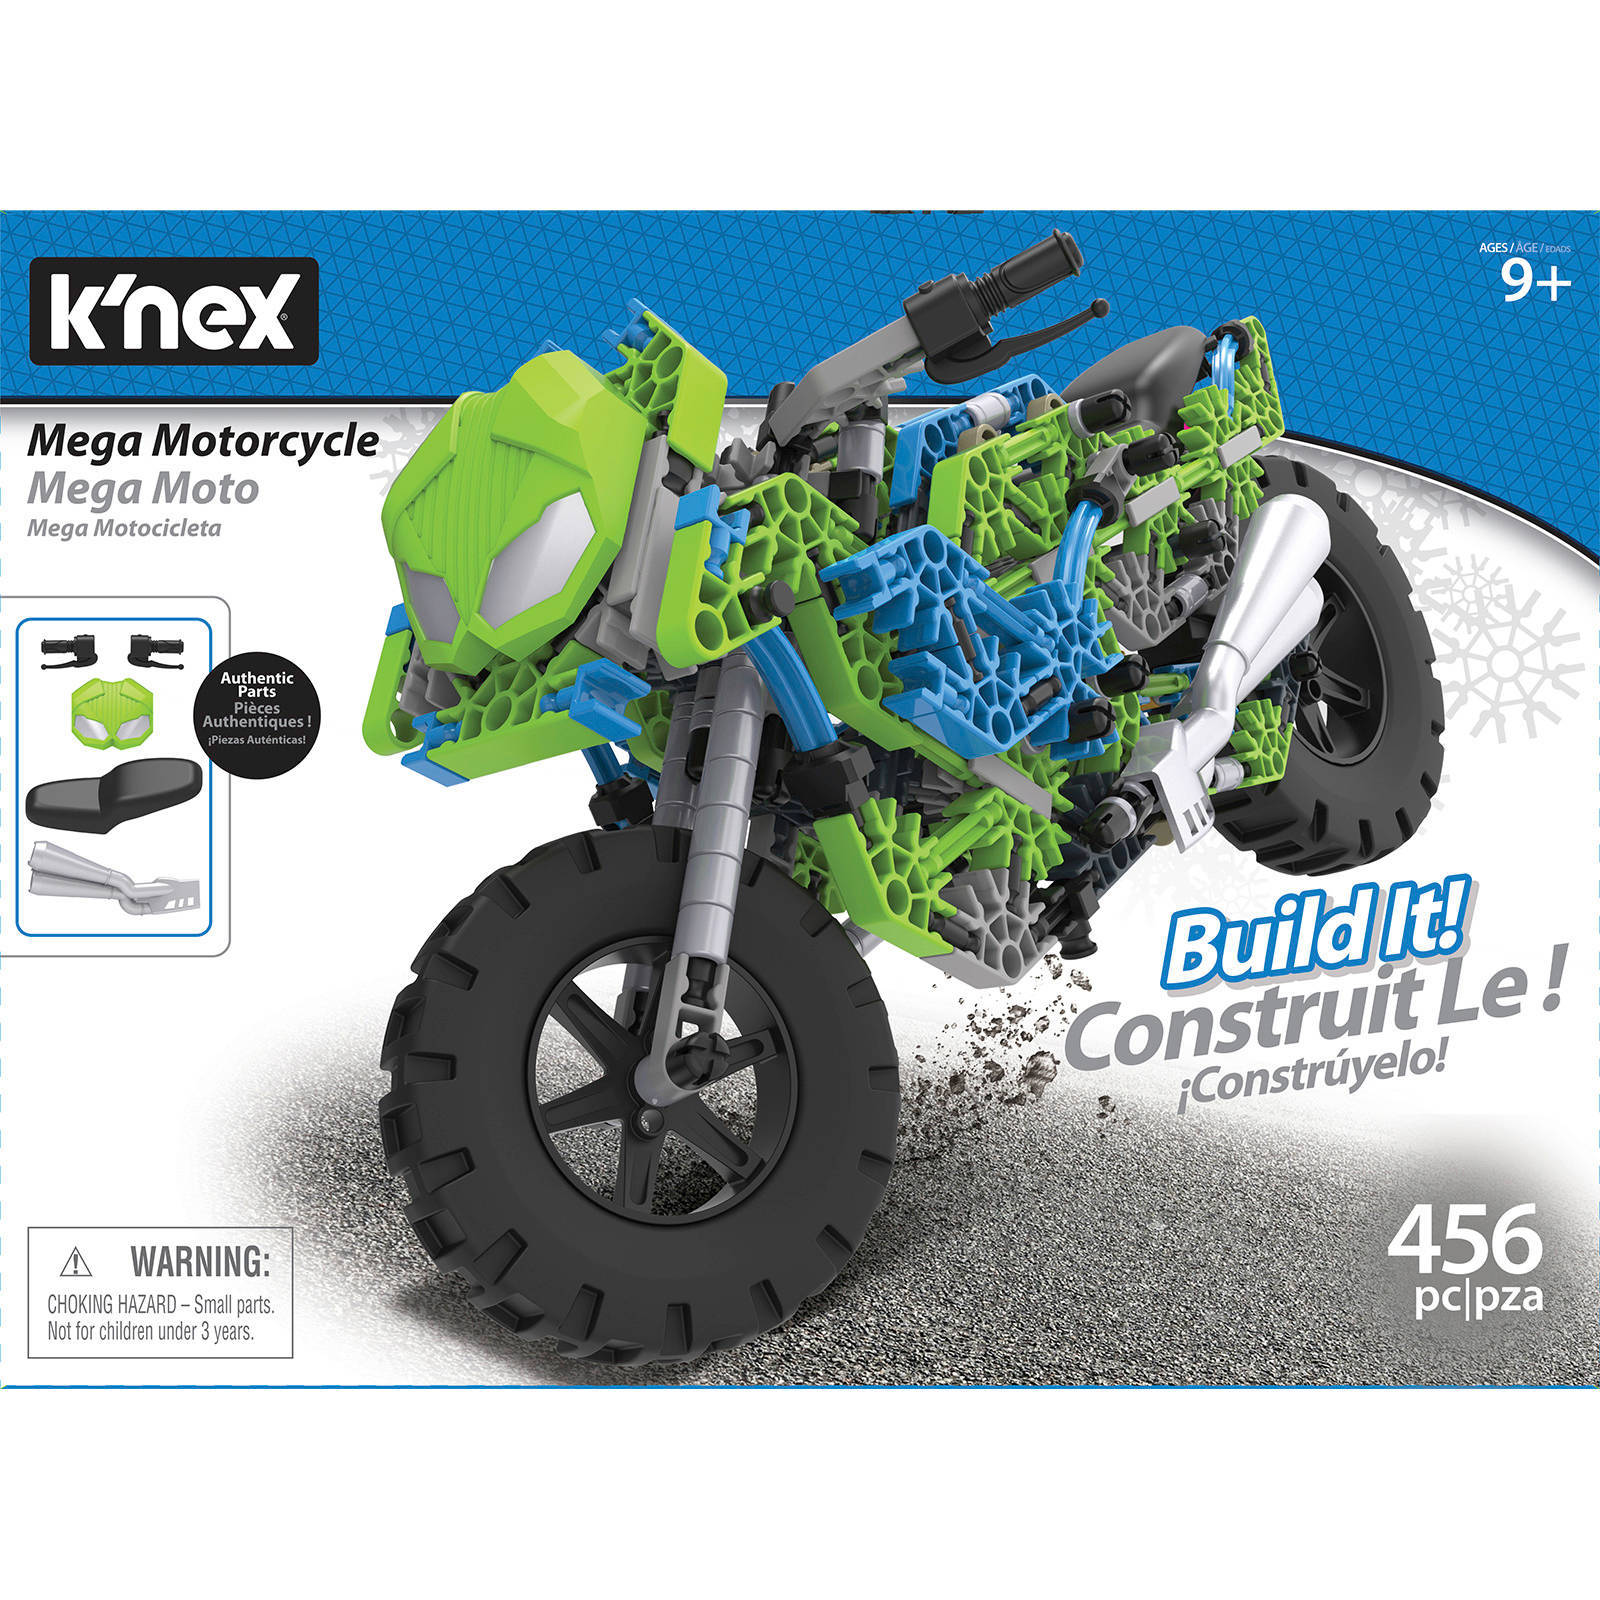 K'nex Knex Building Sets Mega Motorcycle online kopen